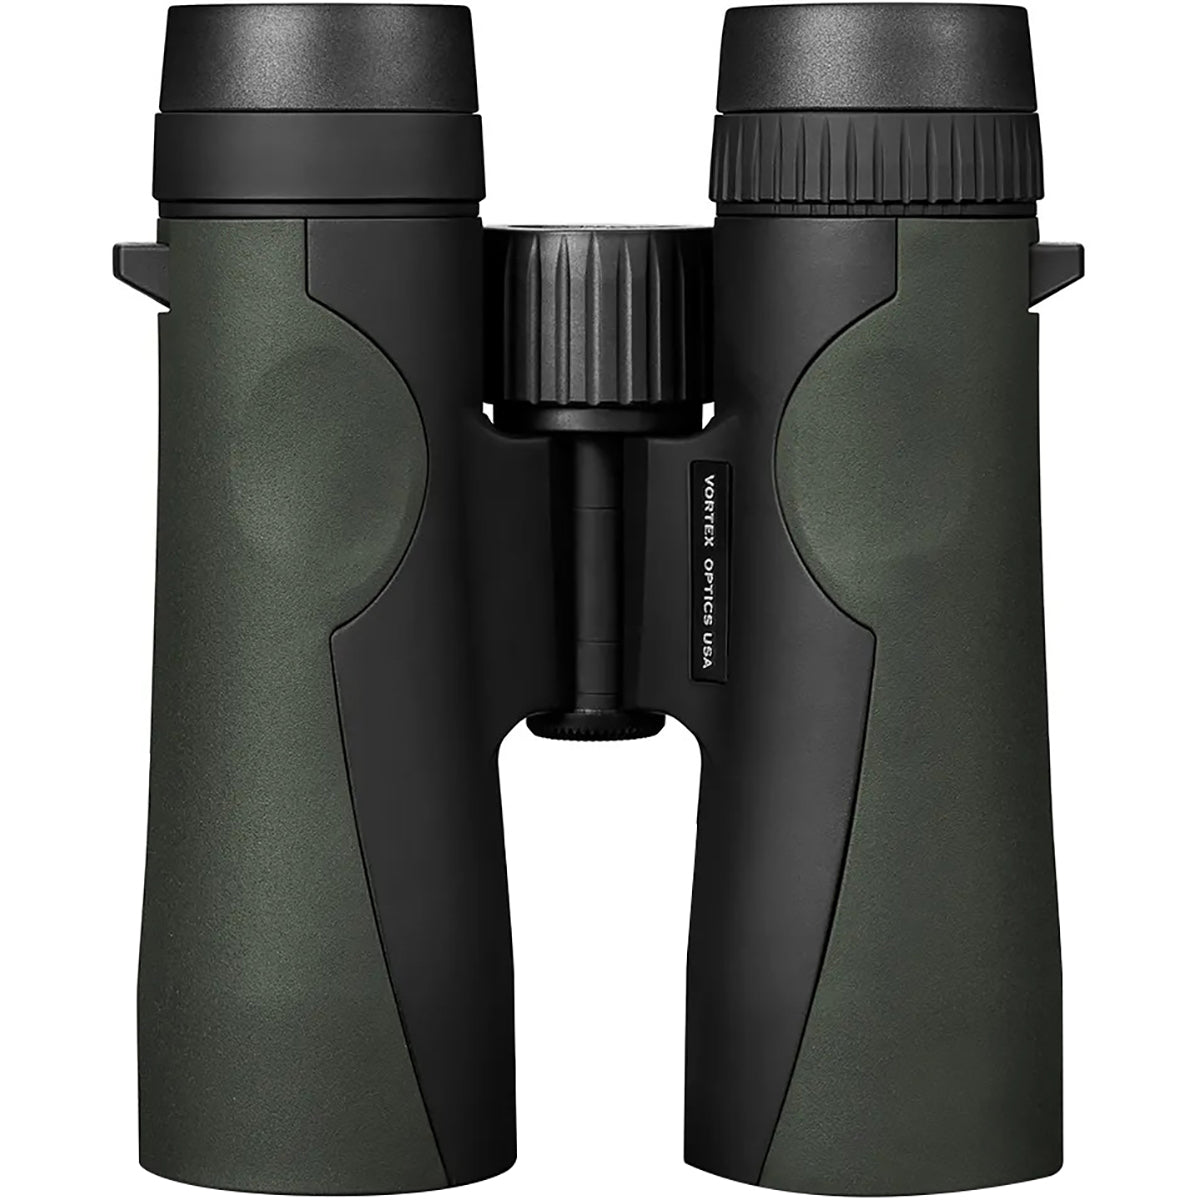 Vortex Optics Crossfire HD Binoculars - 10x50 Vortex